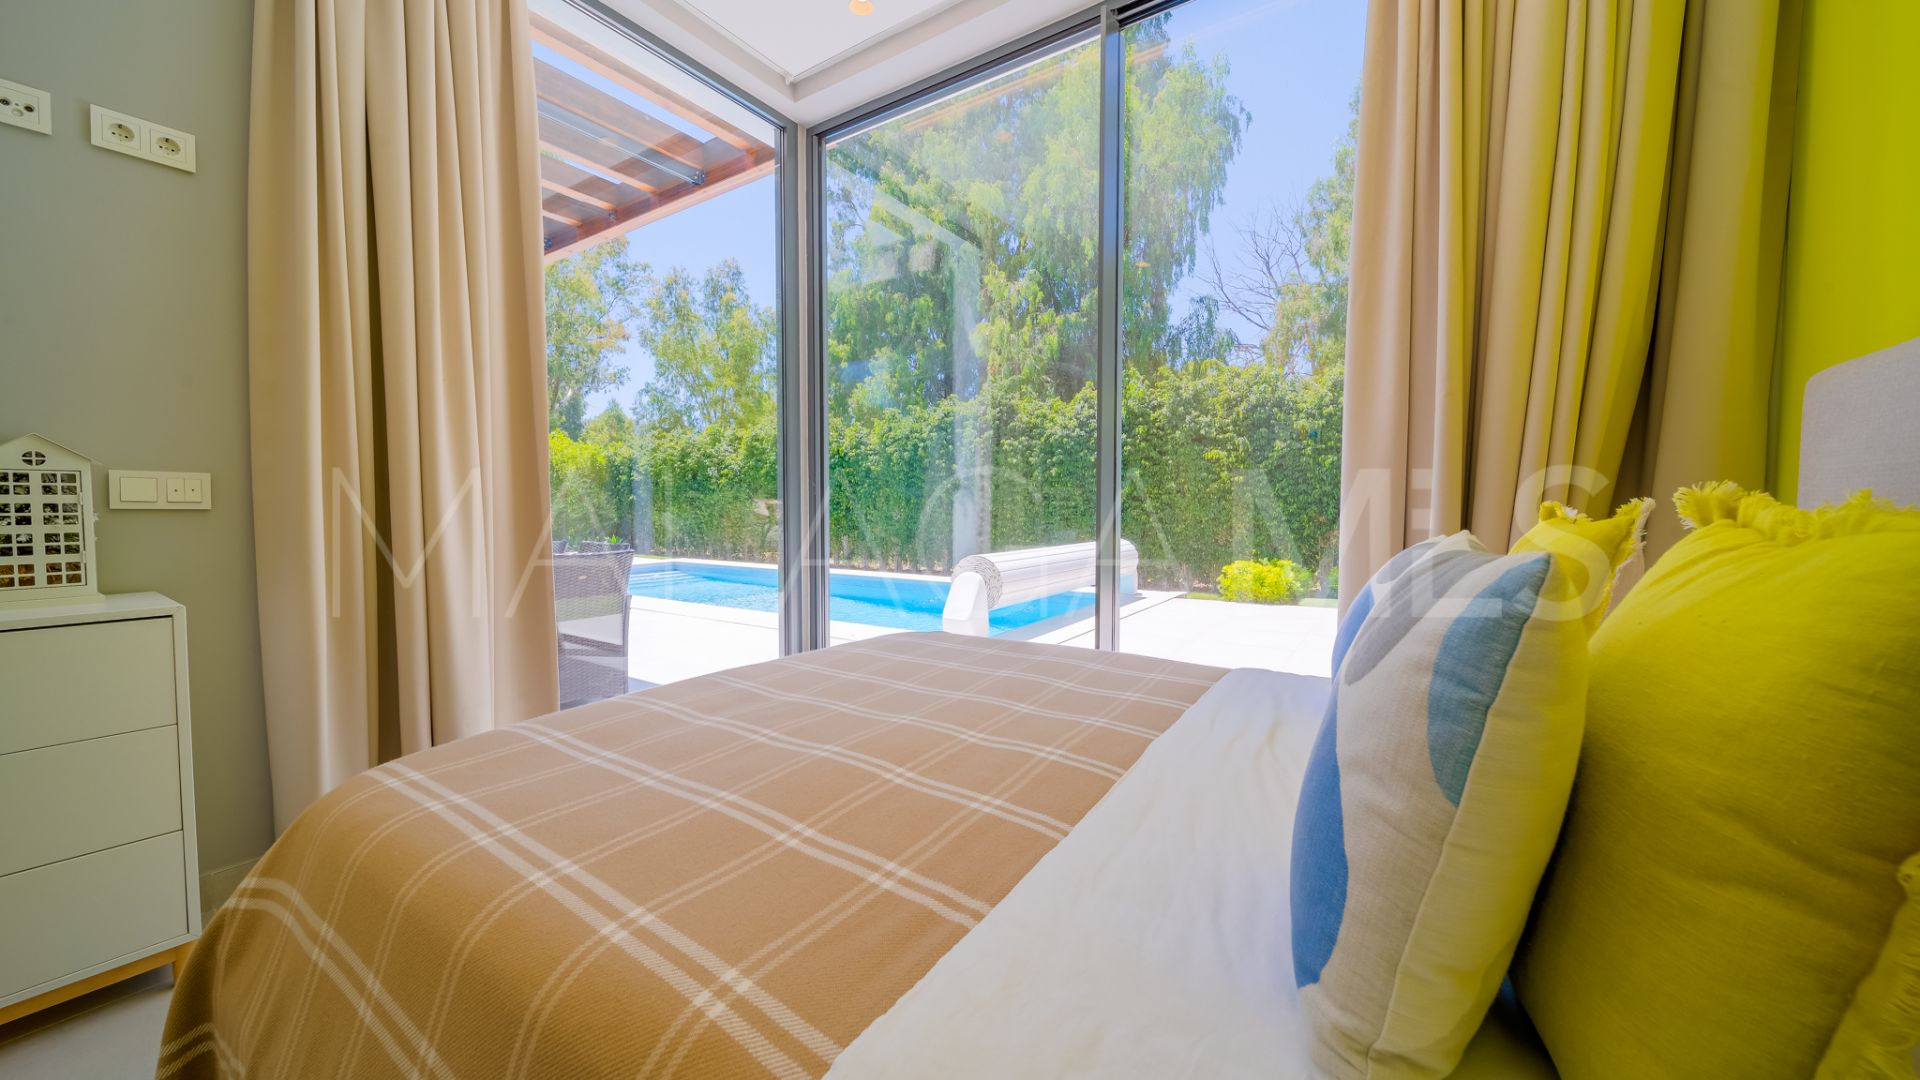 Villa de 4 bedrooms for sale in Arboleda